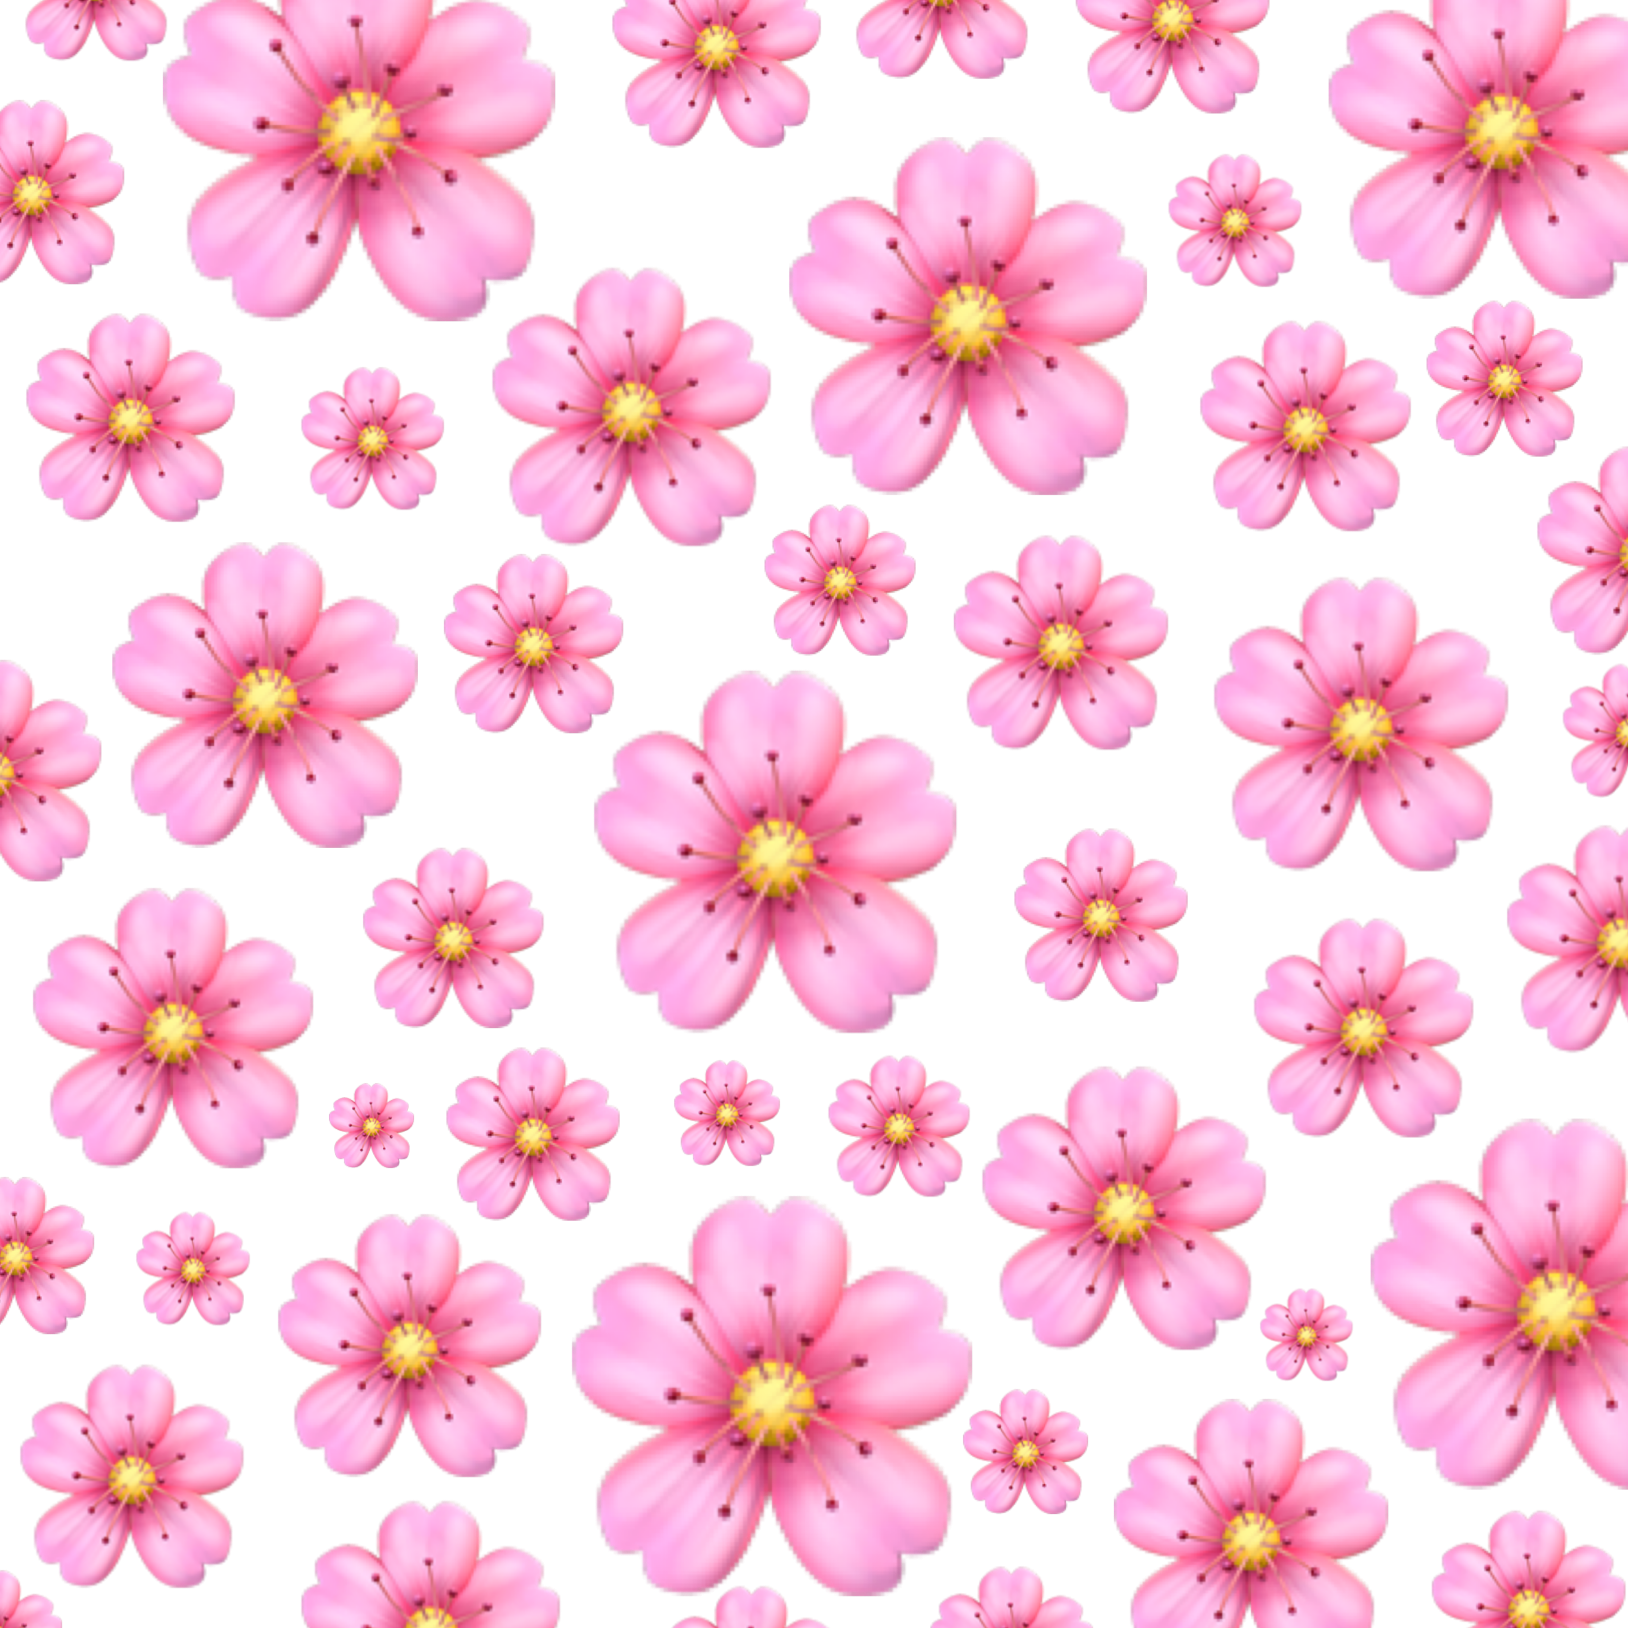 Маленькие цветы розового цвета. Мелкие розовые цветы. Маленькие розовые цветочки. Фон в мелкий цветочек. Фон мелкие розовые цветы.